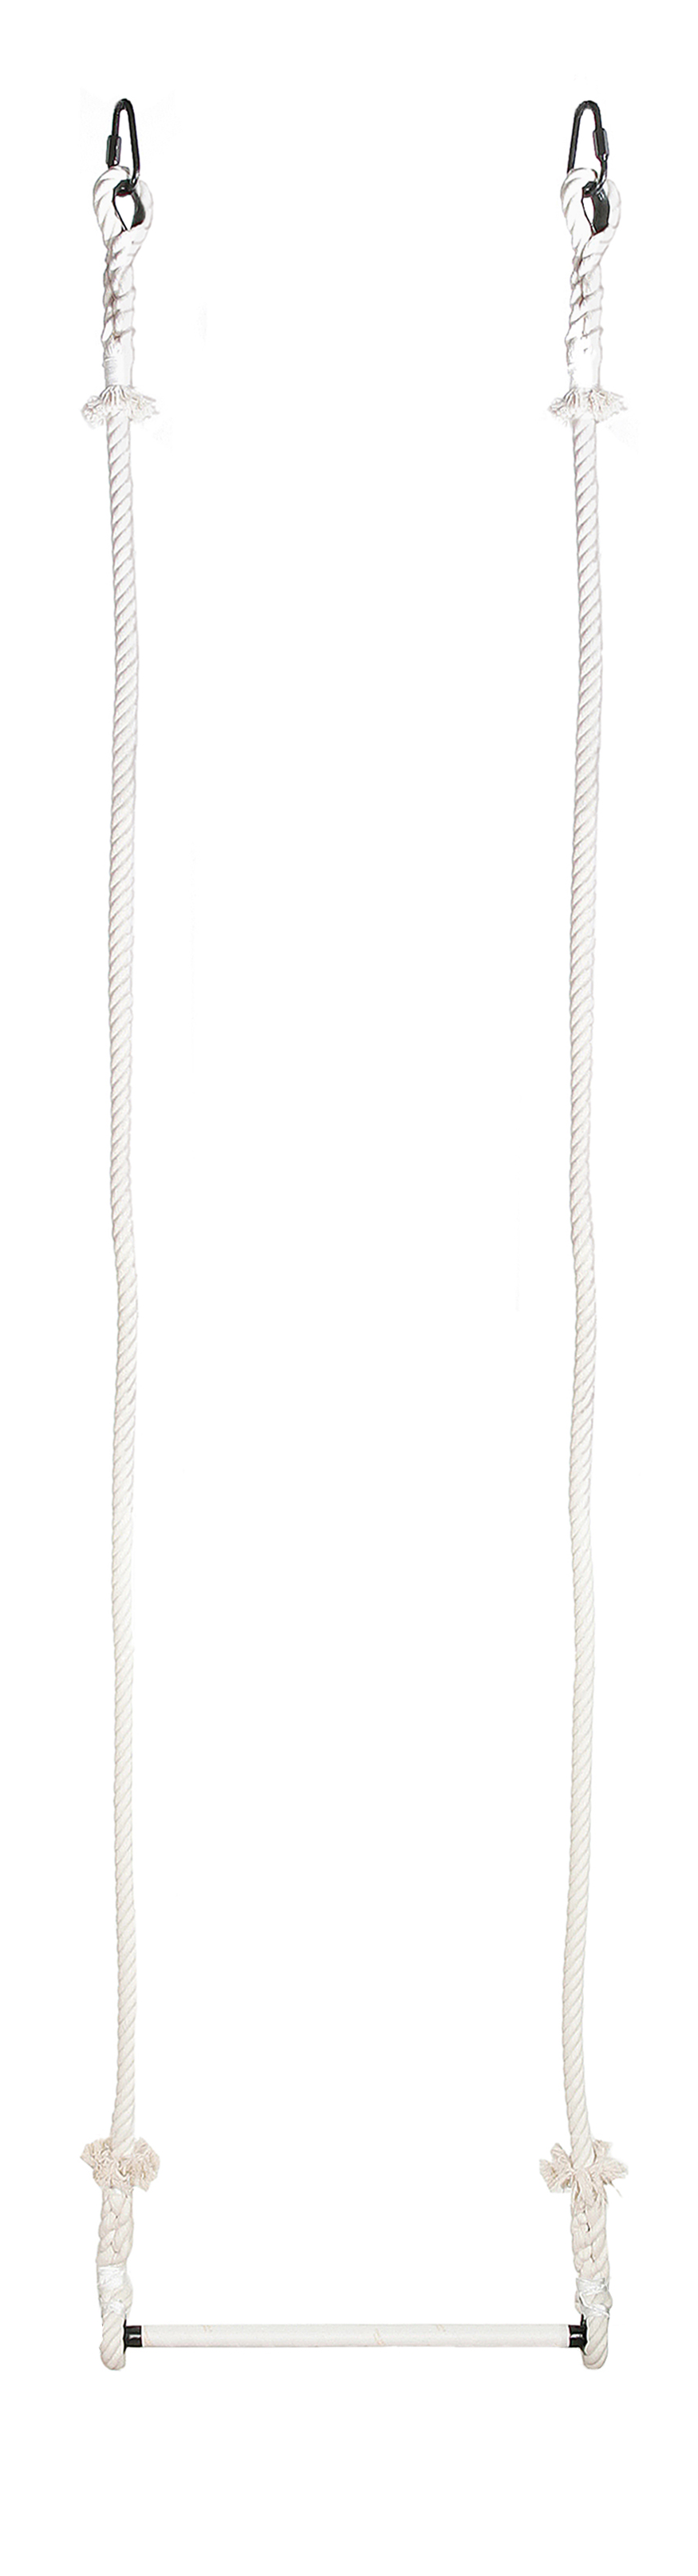 Trapez, 55cm breit, 2,50 Meter Seillänge